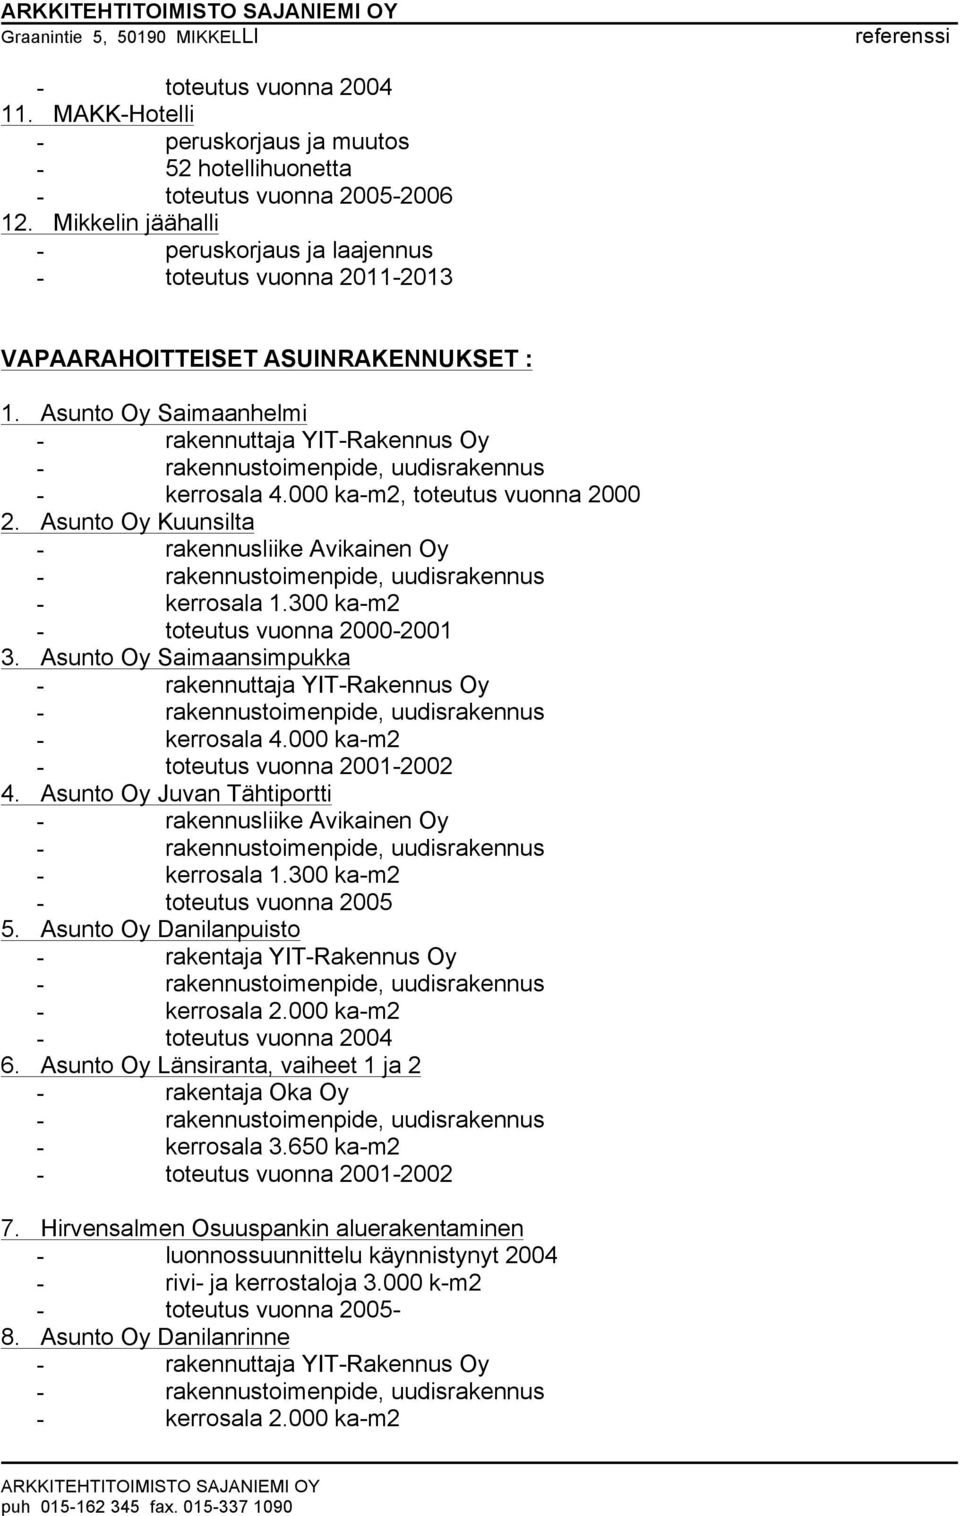 Asunto Oy Saimaansimpukka - kerrosala 4.000 ka-m2 - toteutus vuonna 2001-2002 4. Asunto Oy Juvan Tähtiportti - rakennusliike Avikainen Oy - kerrosala 1.300 ka-m2 - toteutus vuonna 2005 5.